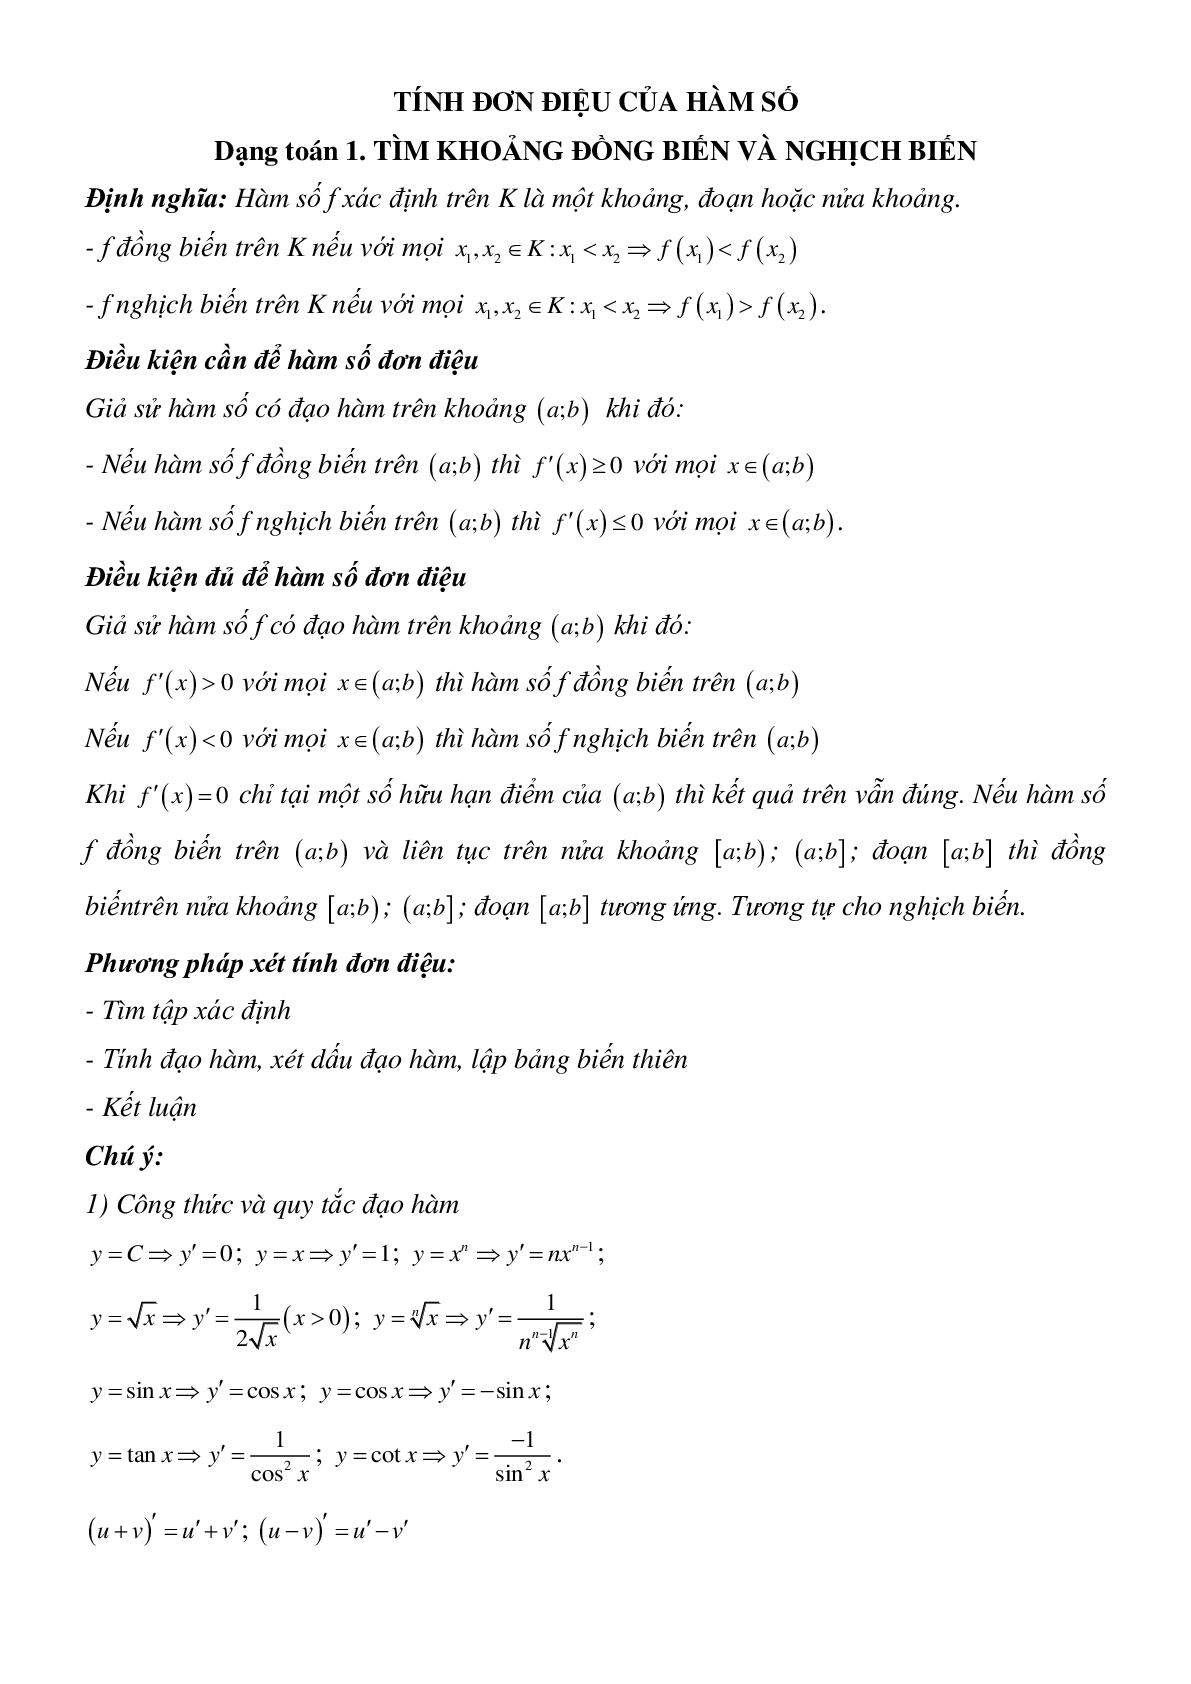 Tính đơn điệu của hàm số - Ôn thi THPT QG môn Toán (trang 1)